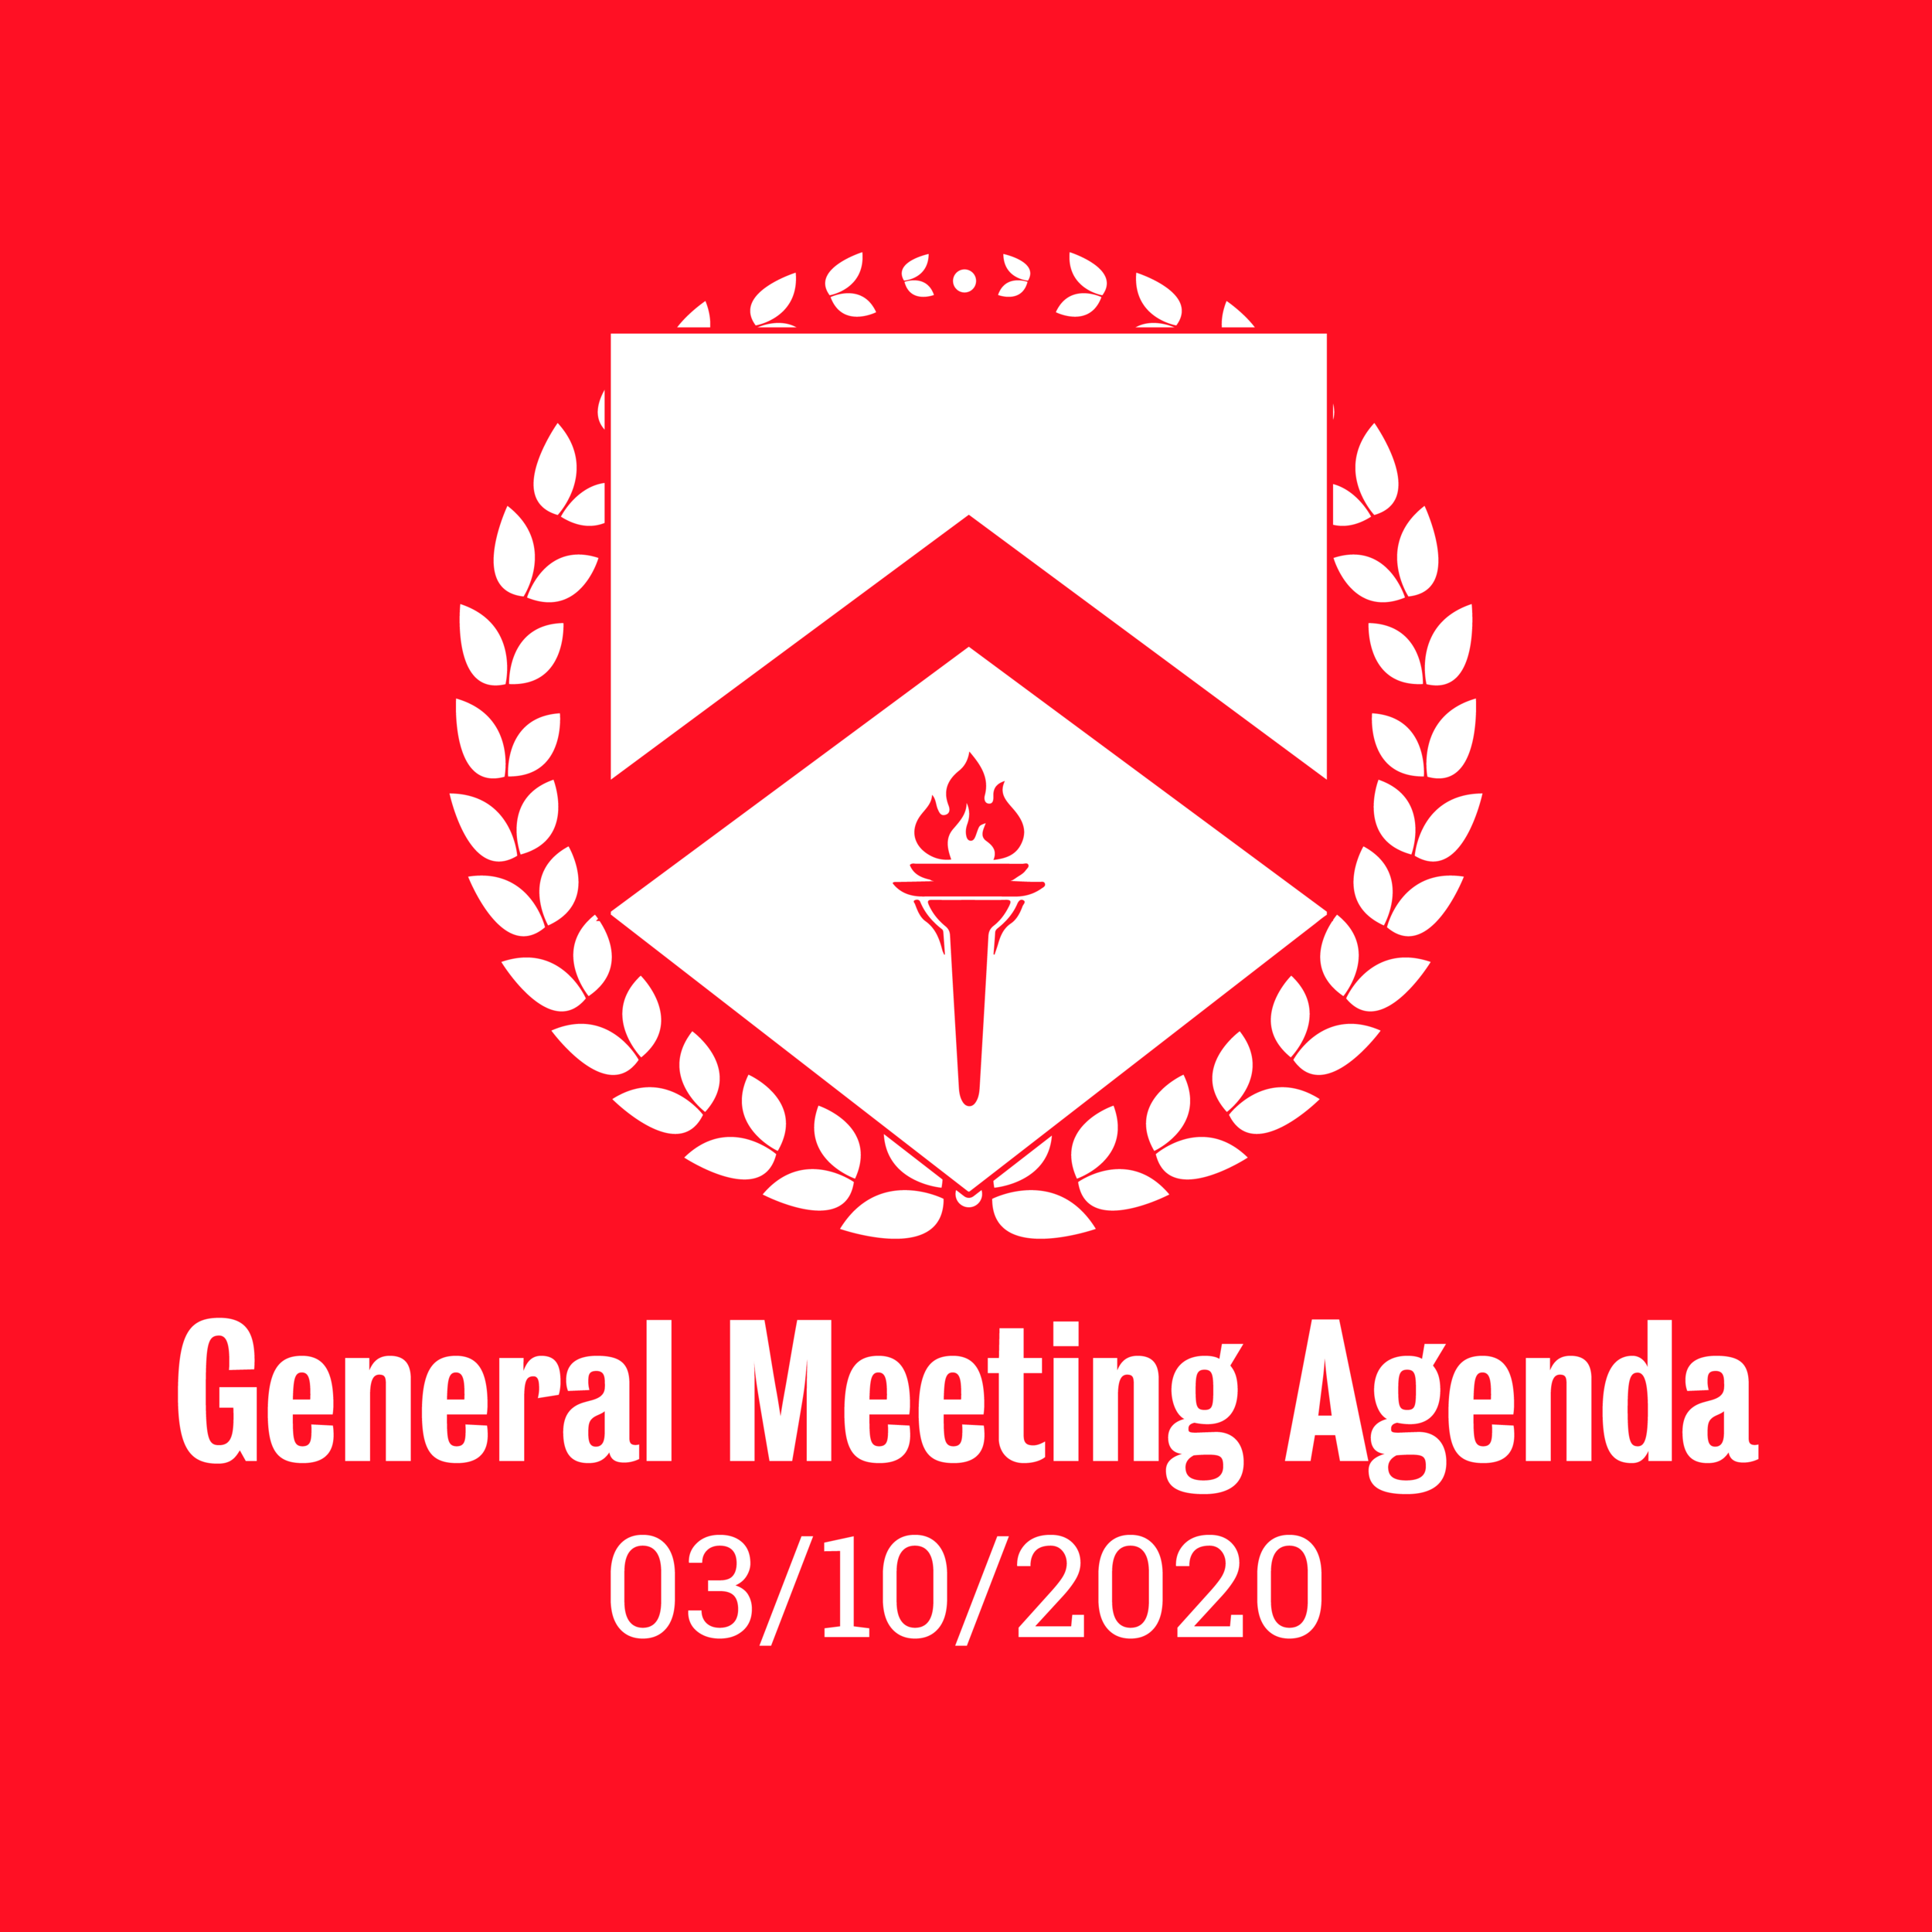 General Meeting Agenda 03/10/2020